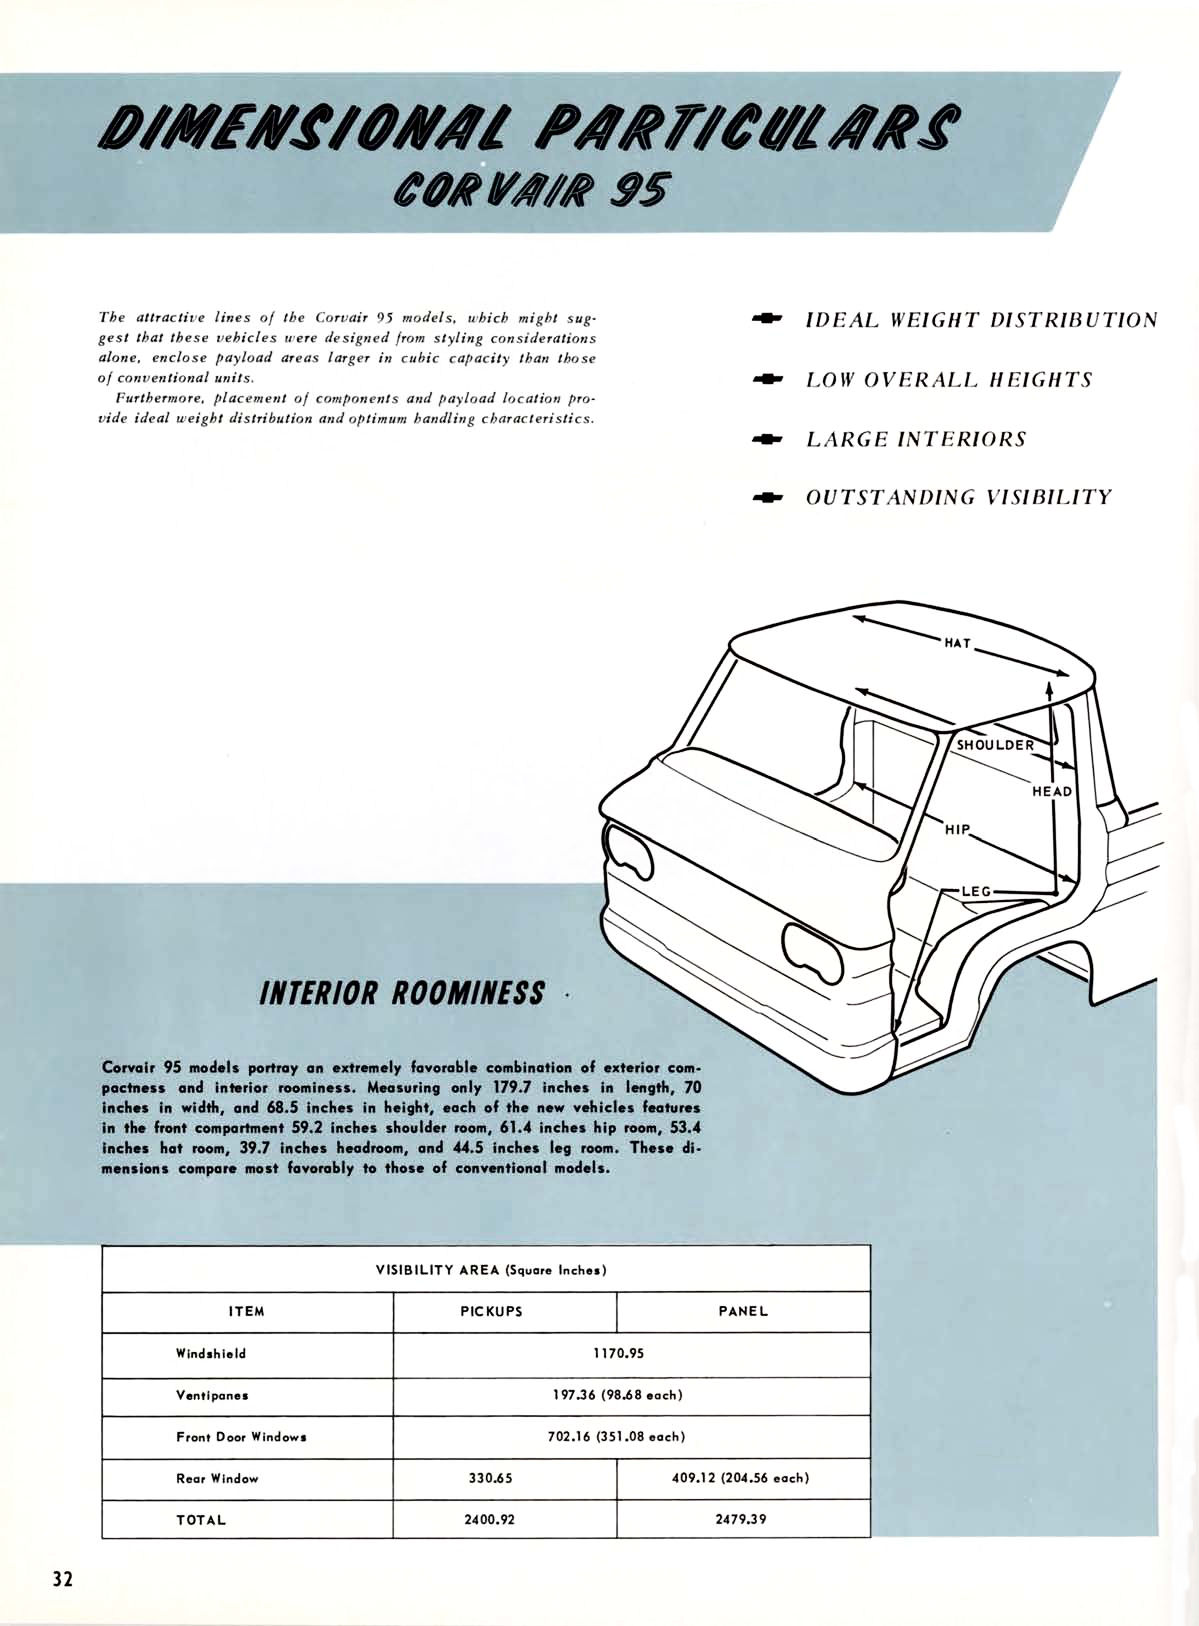 1961 Chevrolet Truck Engineering Features-32